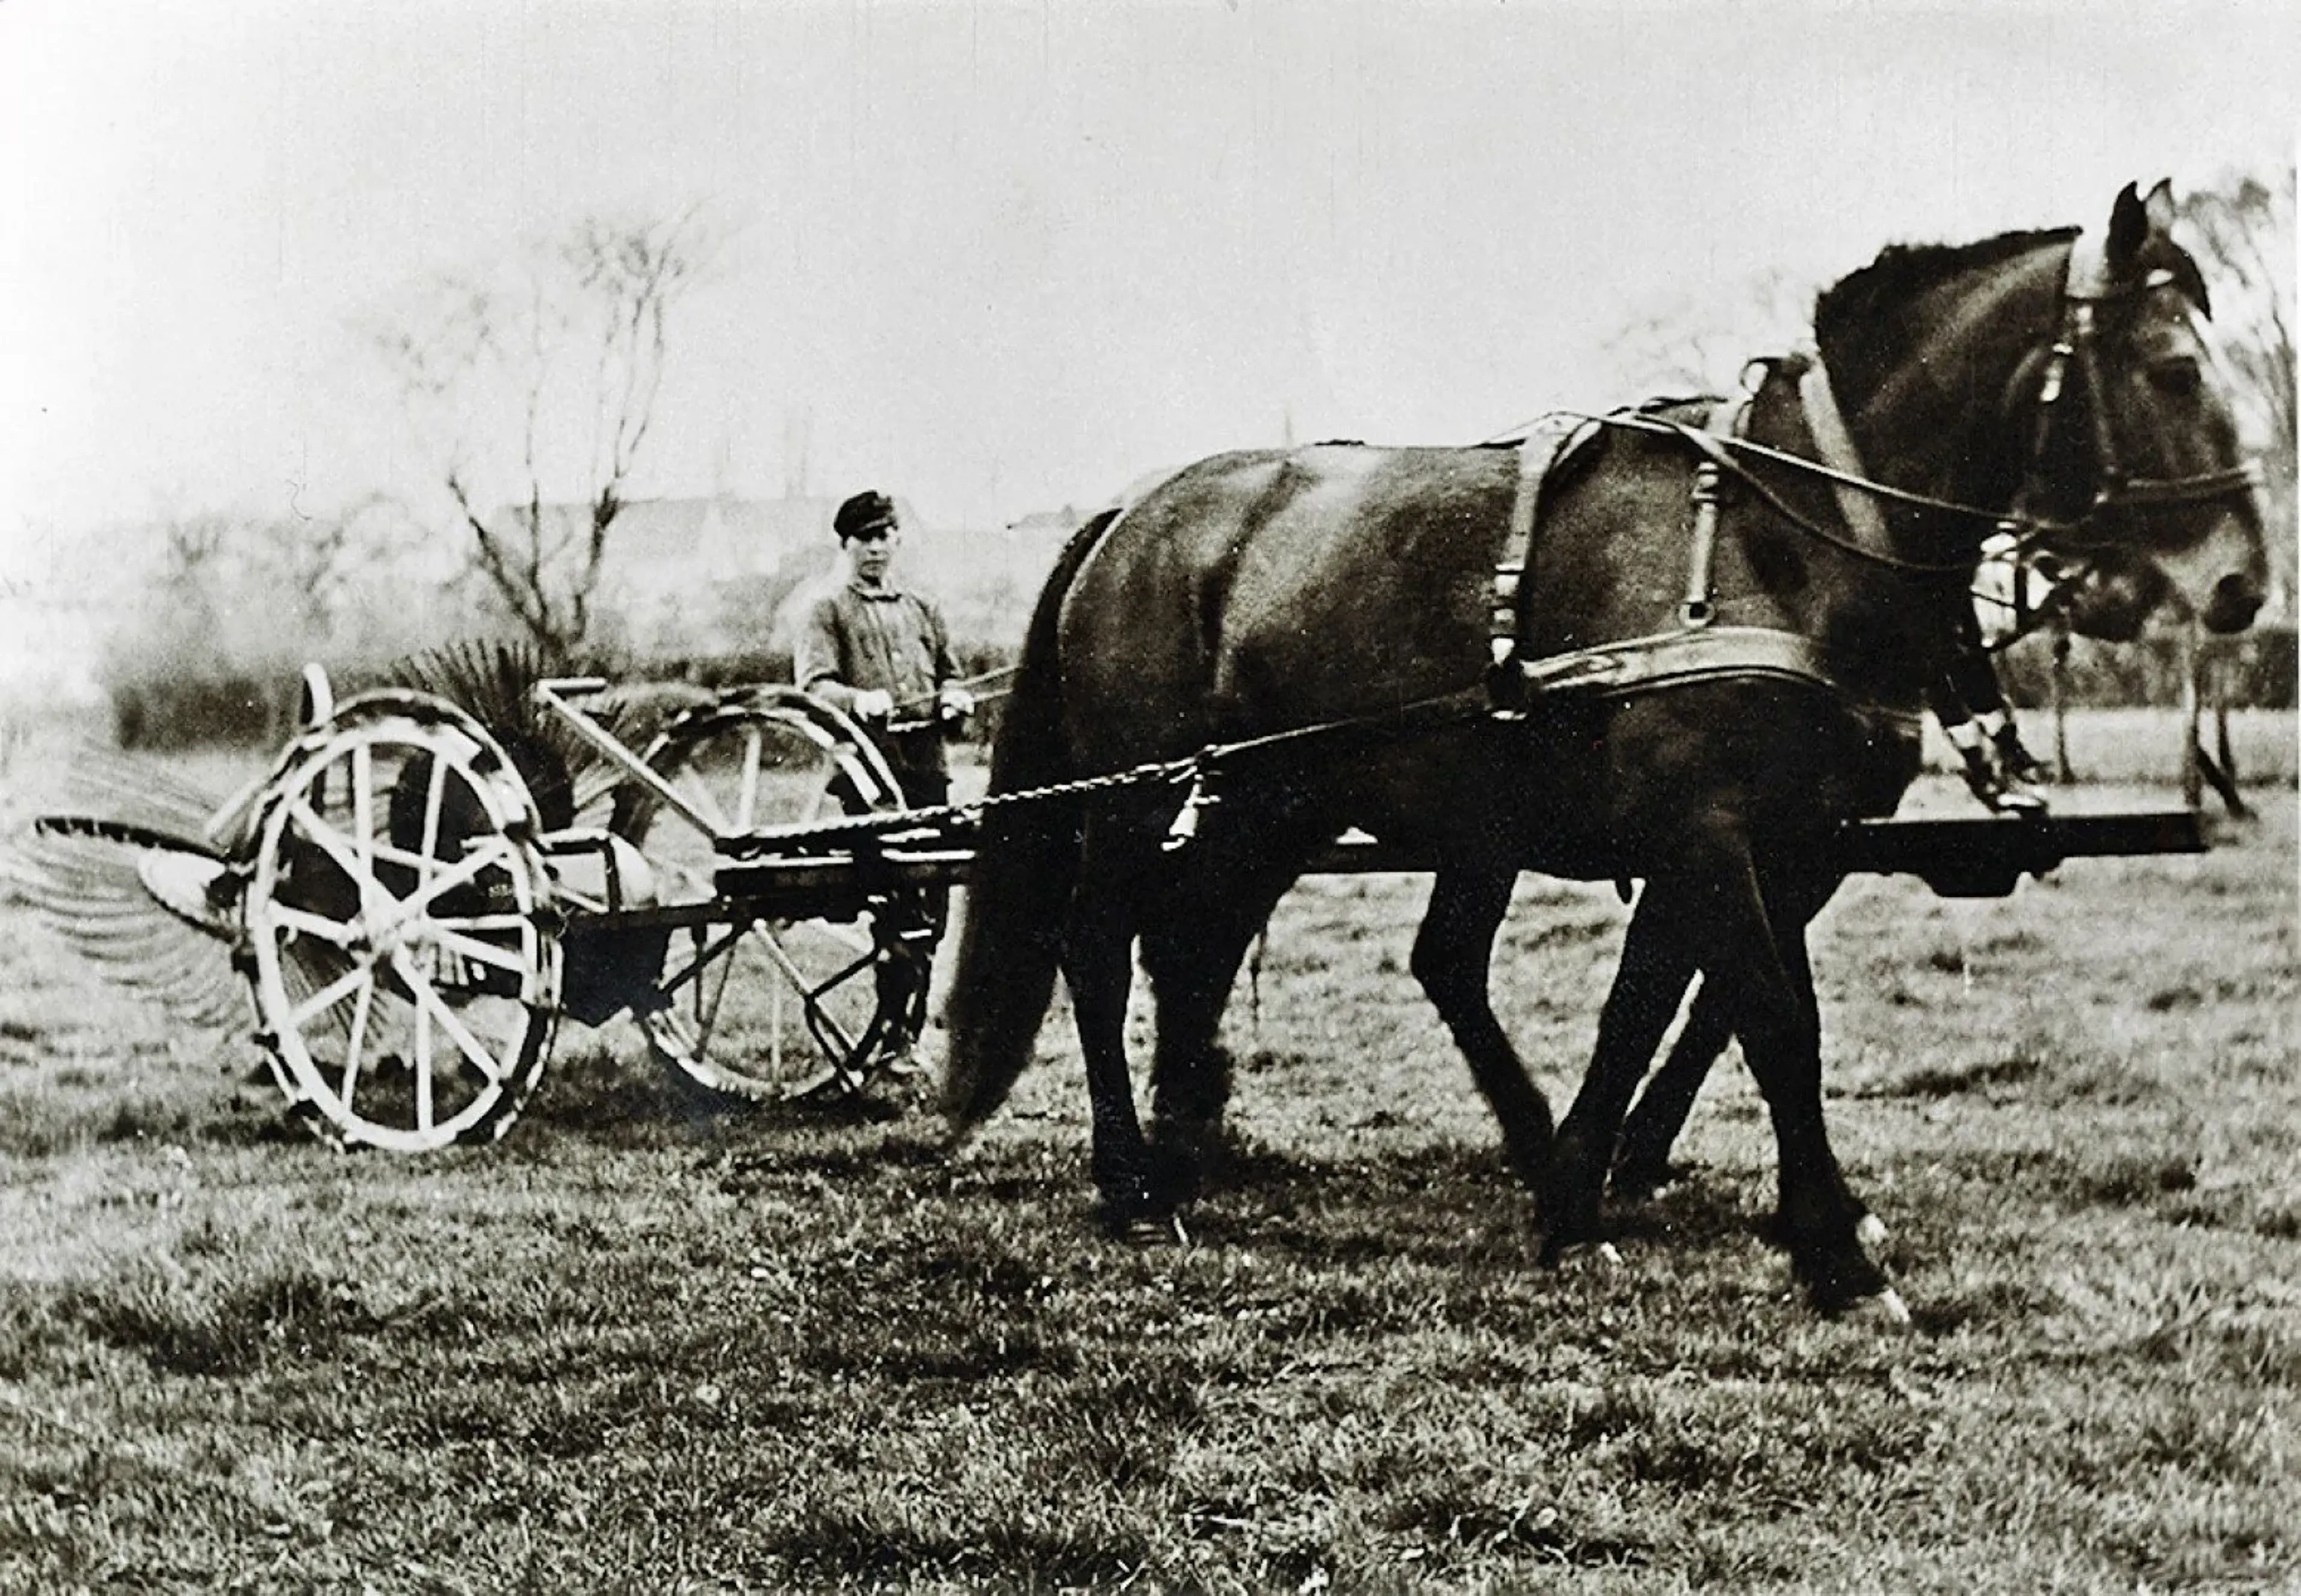 Fotografía histórica de un agricultor con una cosechadora de patatas tirada por caballos.